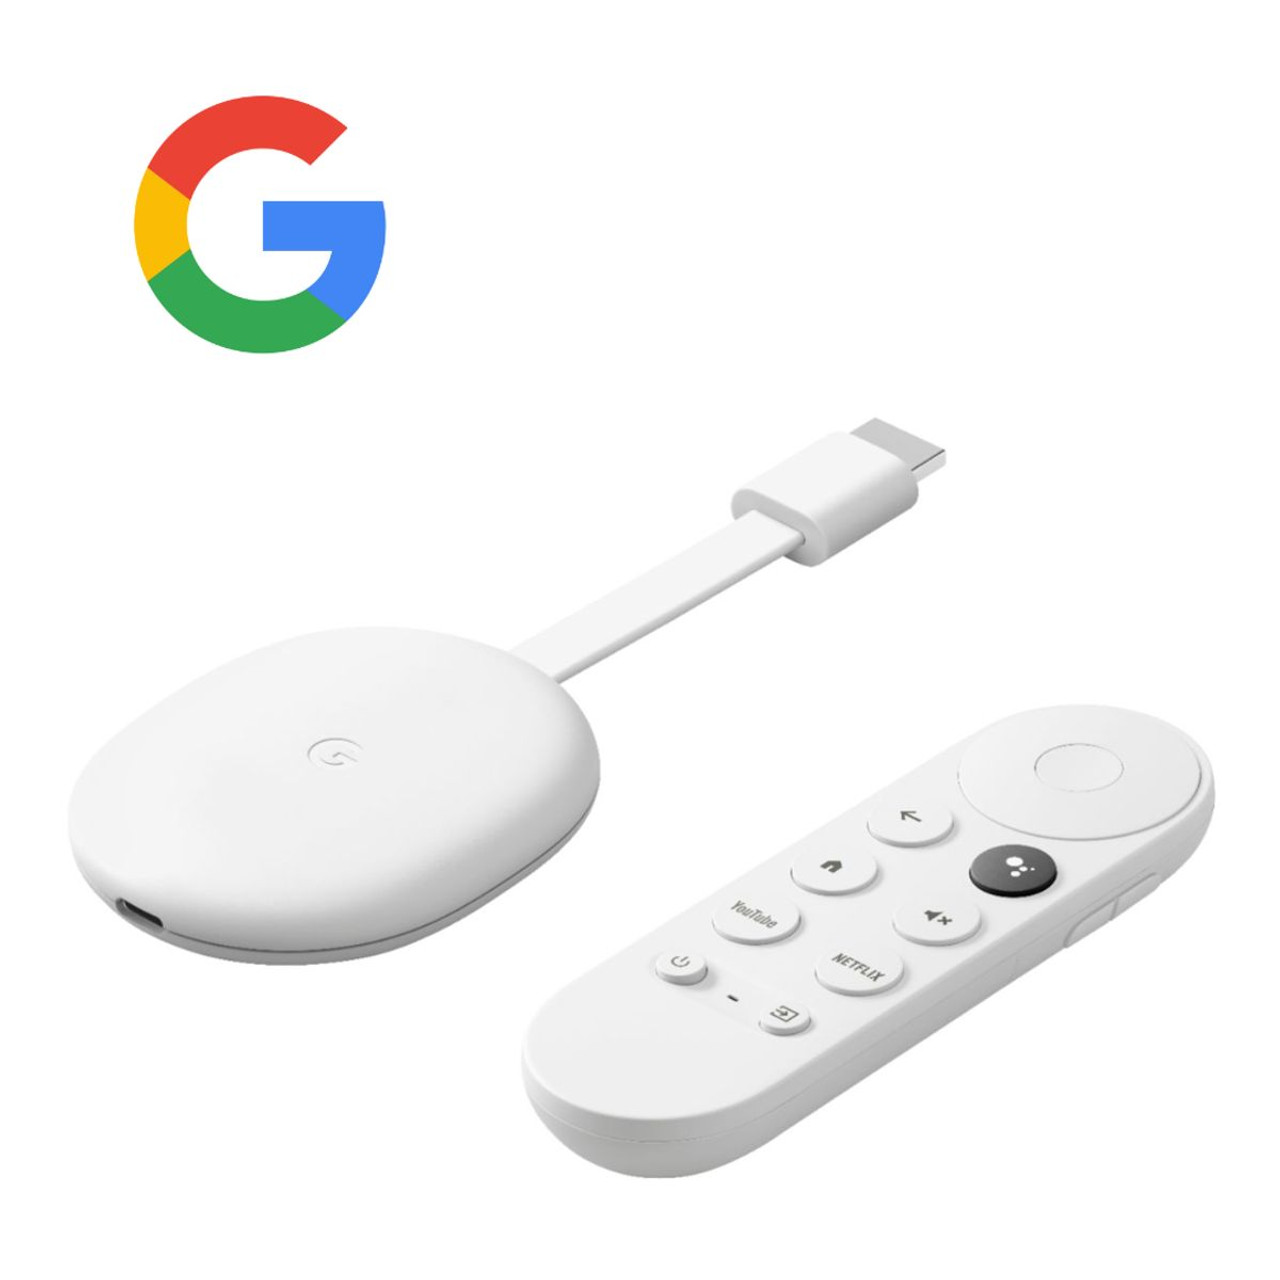 Google Chromecast with Google TV (4K HDR) product image